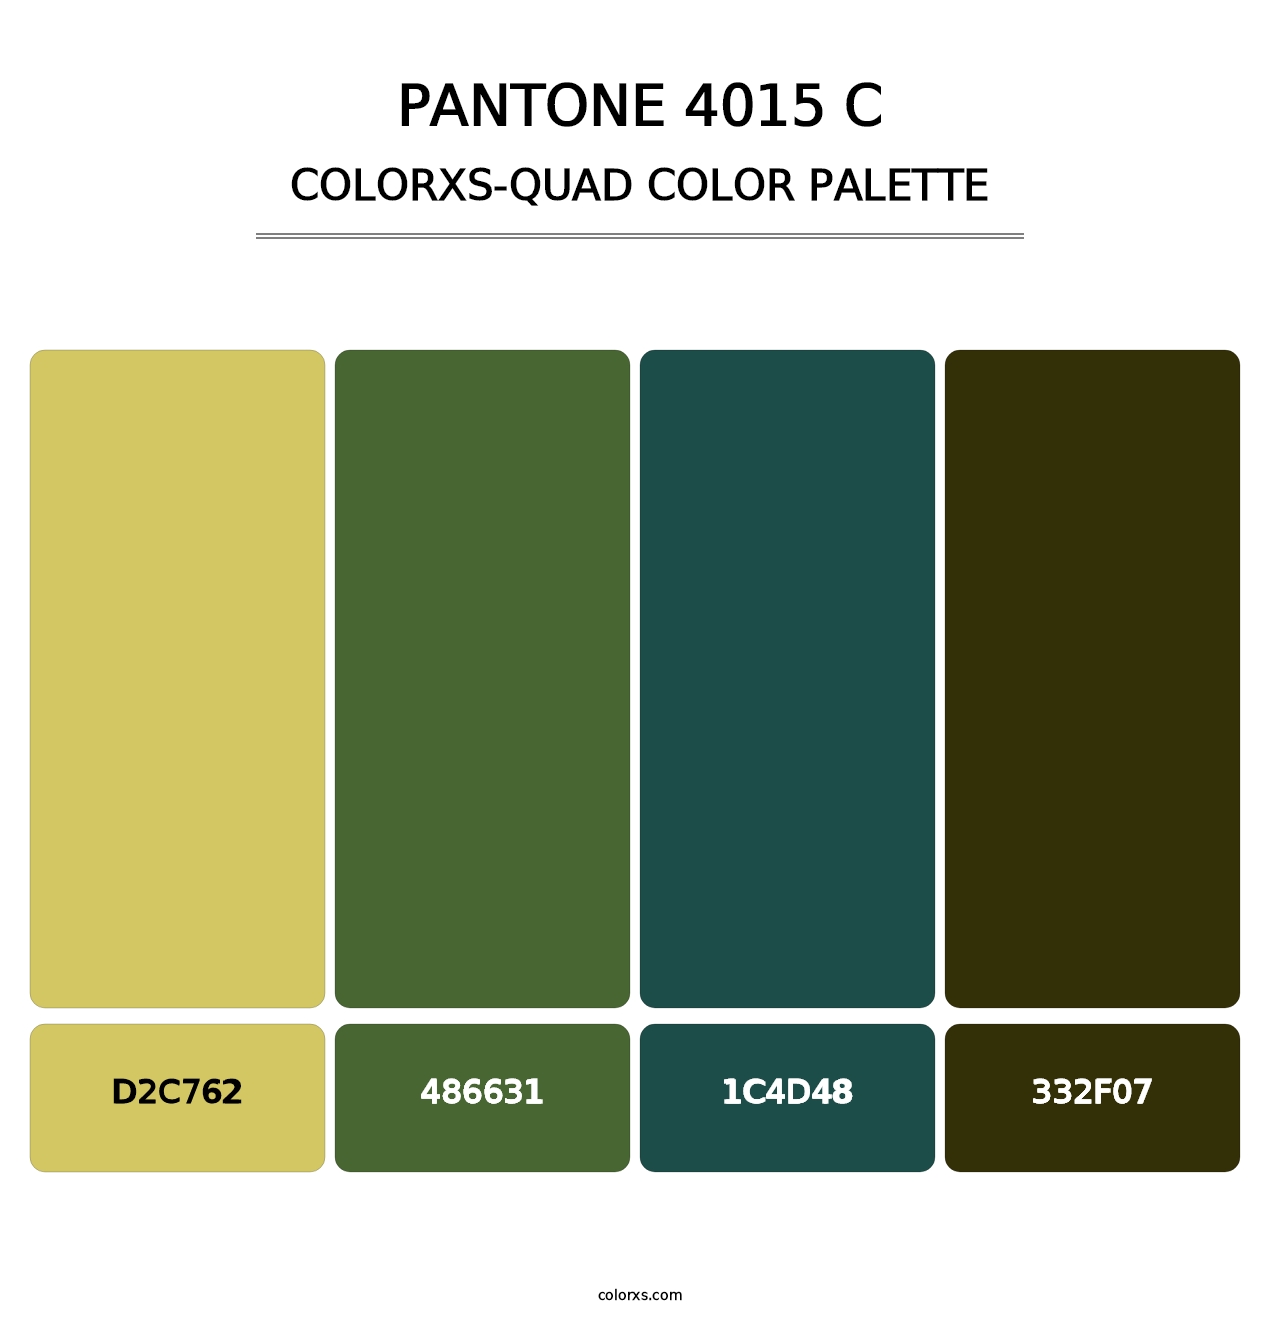 PANTONE 4015 C - Colorxs Quad Palette